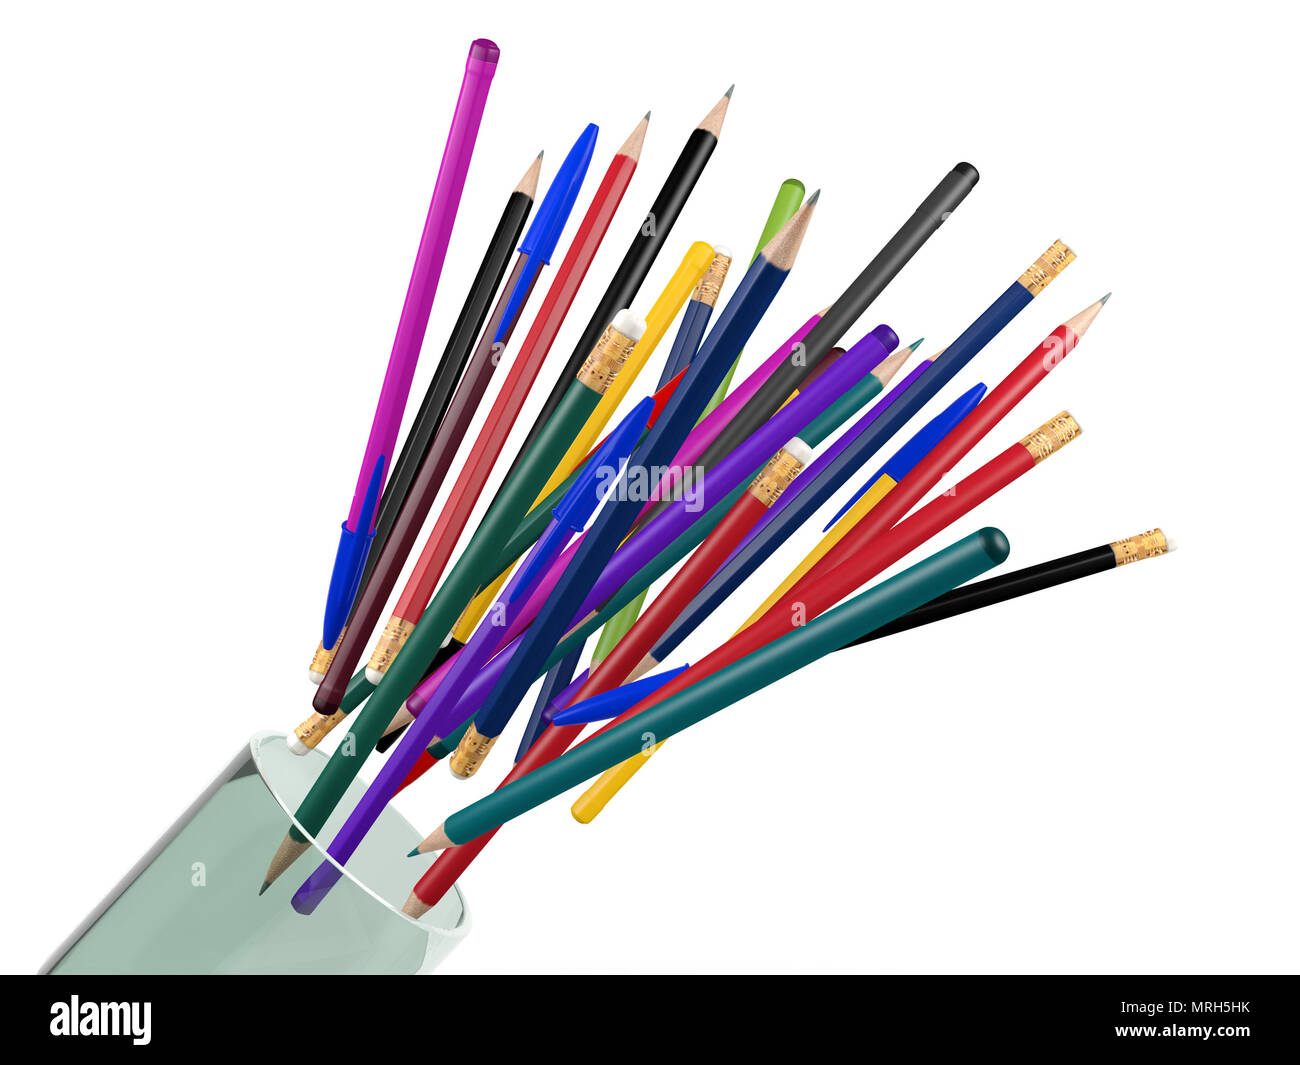 Gruppe von Kugelschreiber, Bleistifte, Buntstifte bouncing aus transparentem Glas, Papier- und Schreibwaren Elemente Stockfoto